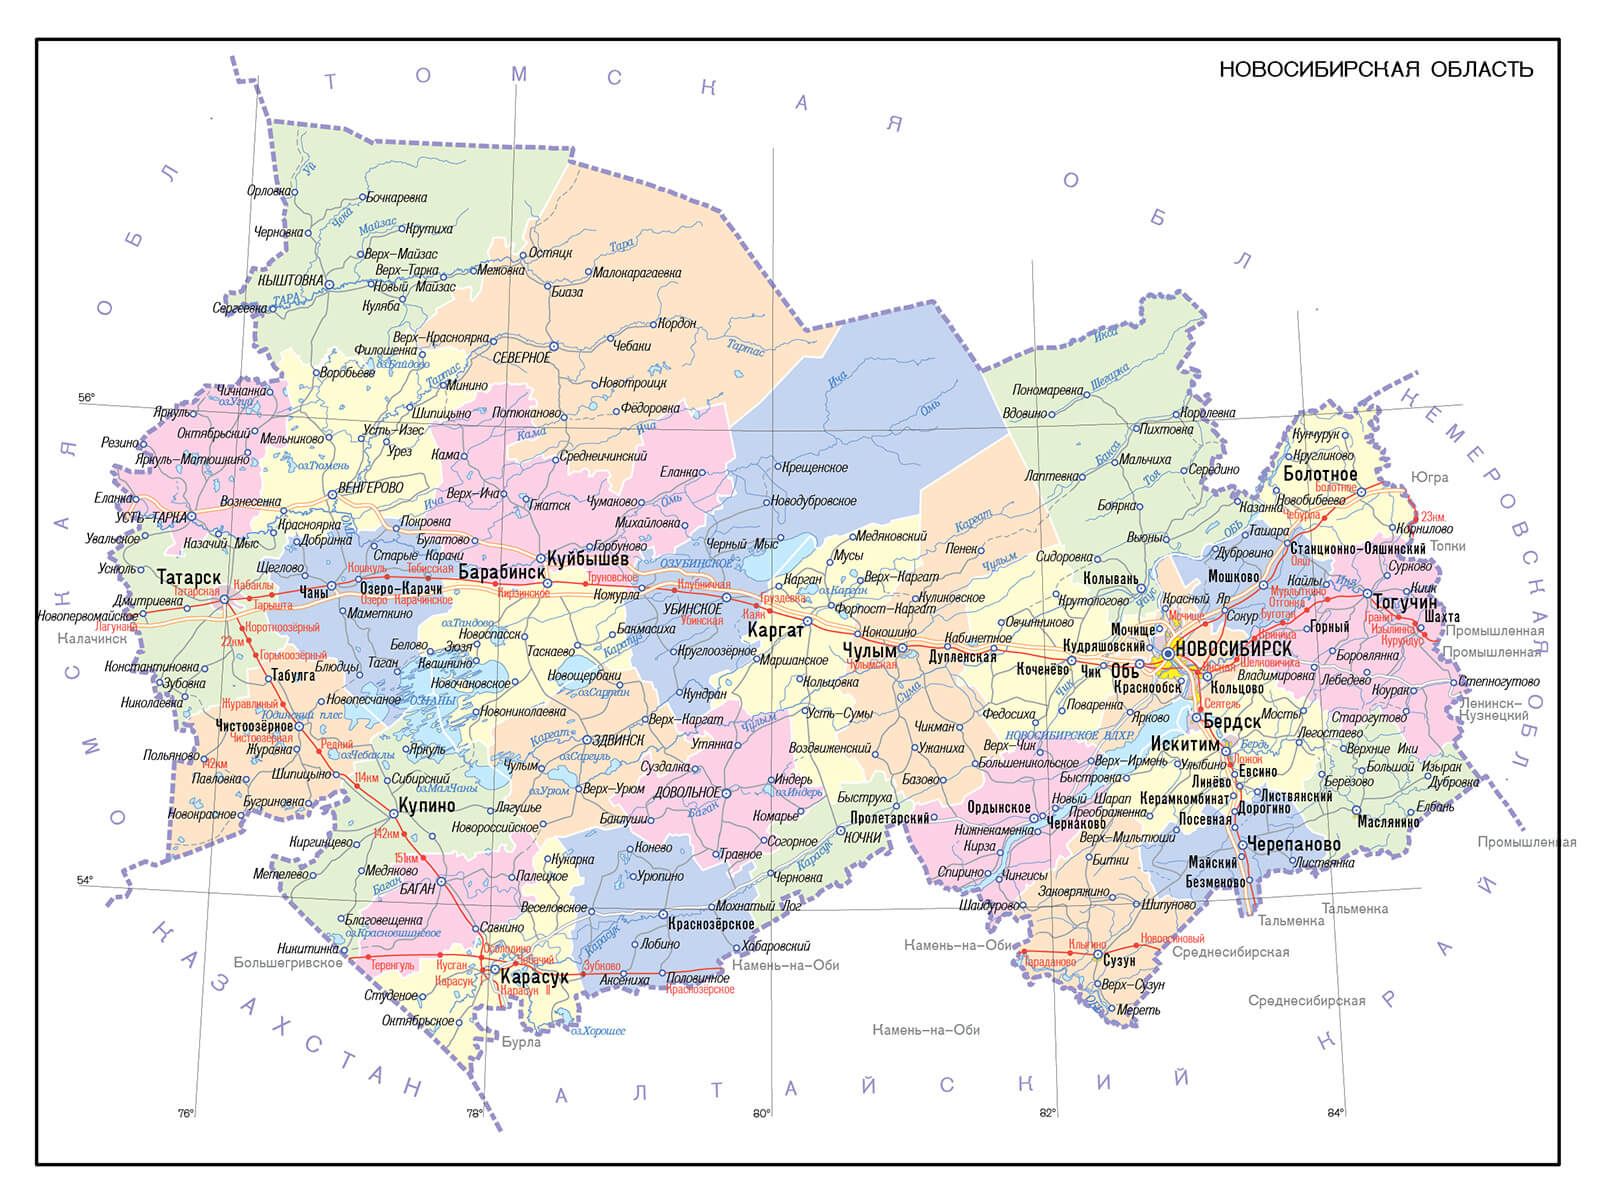 Карта кыштовского района новосибирской области с деревнями и дорогами